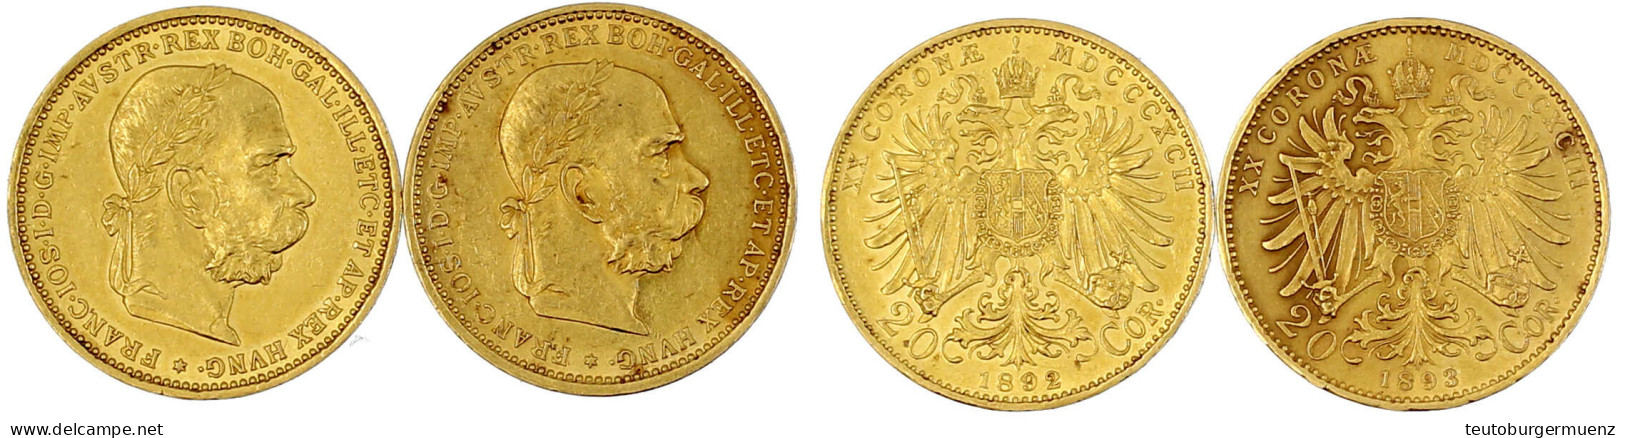 2 X 20 Kronen 1892 Und 1893. Je 6,78 G. 900/1000. Beide Vorzüglich. Herinek 330, 331. Friedberg 421. - Gold Coins